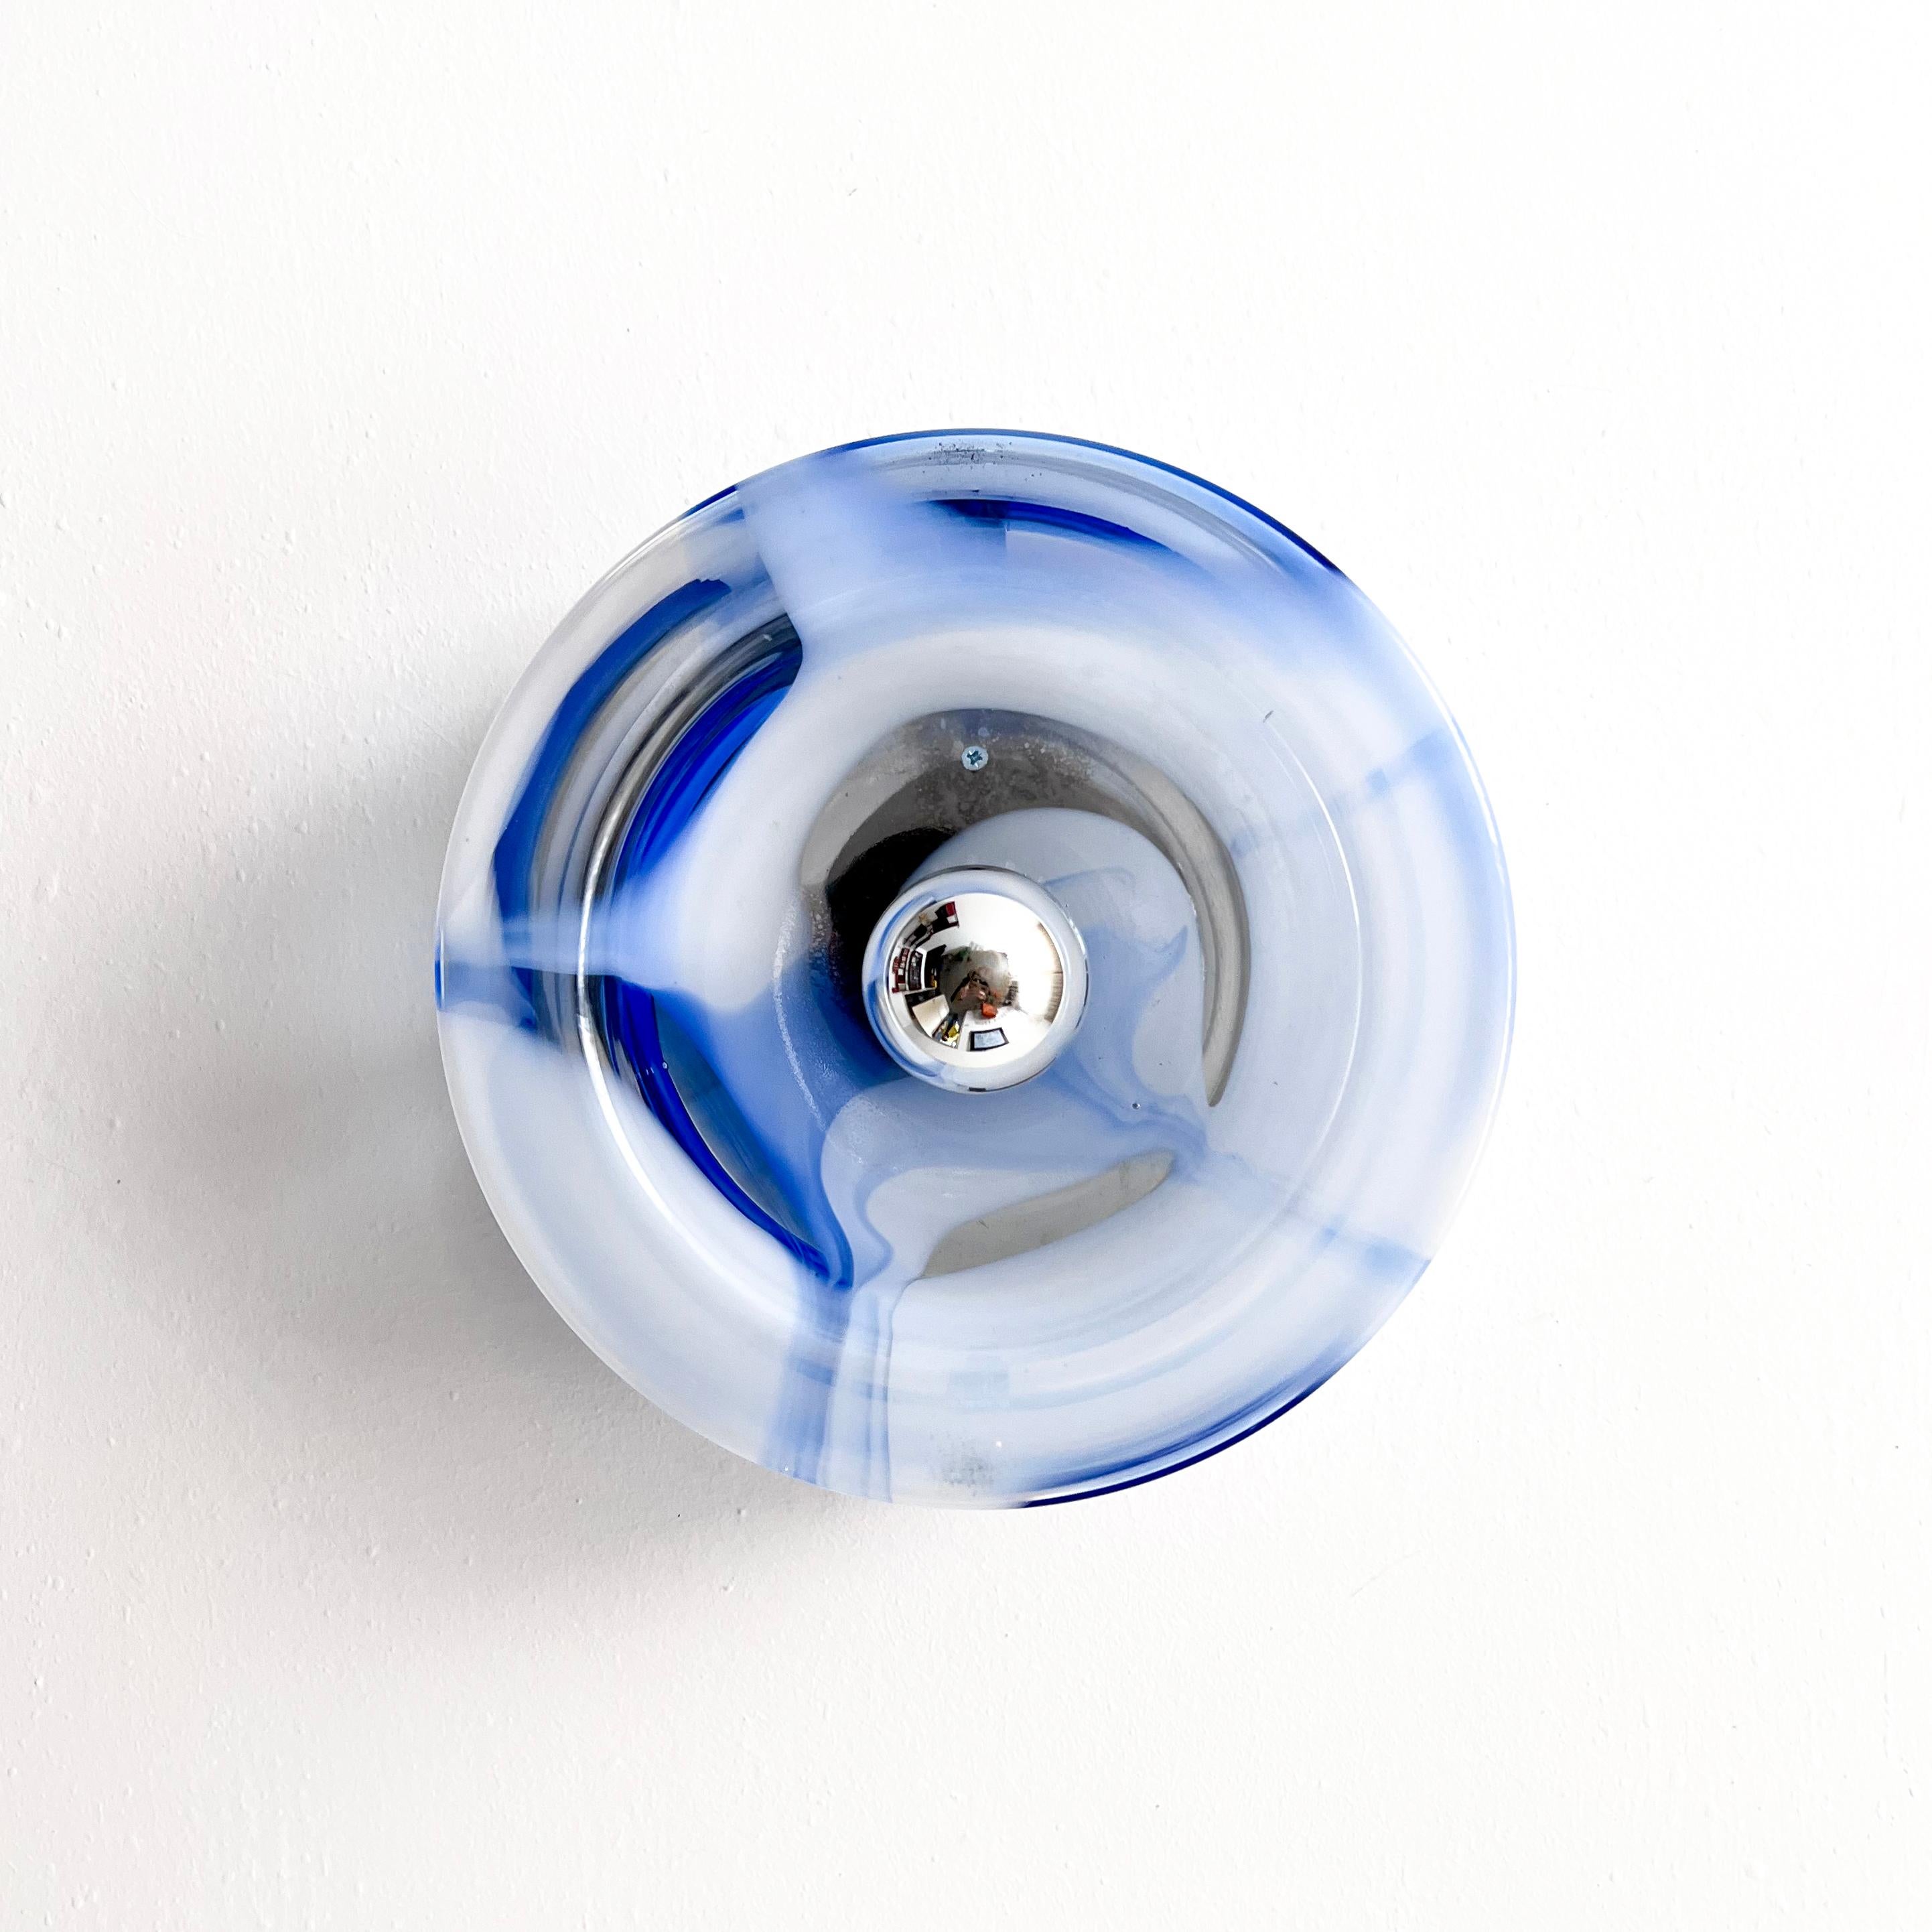 Applique/plafonnier vintage en verre de Murano, fabriqué par Mazzega. Il se compose d'un cylindre transparent, avec des rayures irrégulières et hypnotiques en blanc et en bleu. Le plateau en verre est fixé au cadre métallique par deux vis en métal